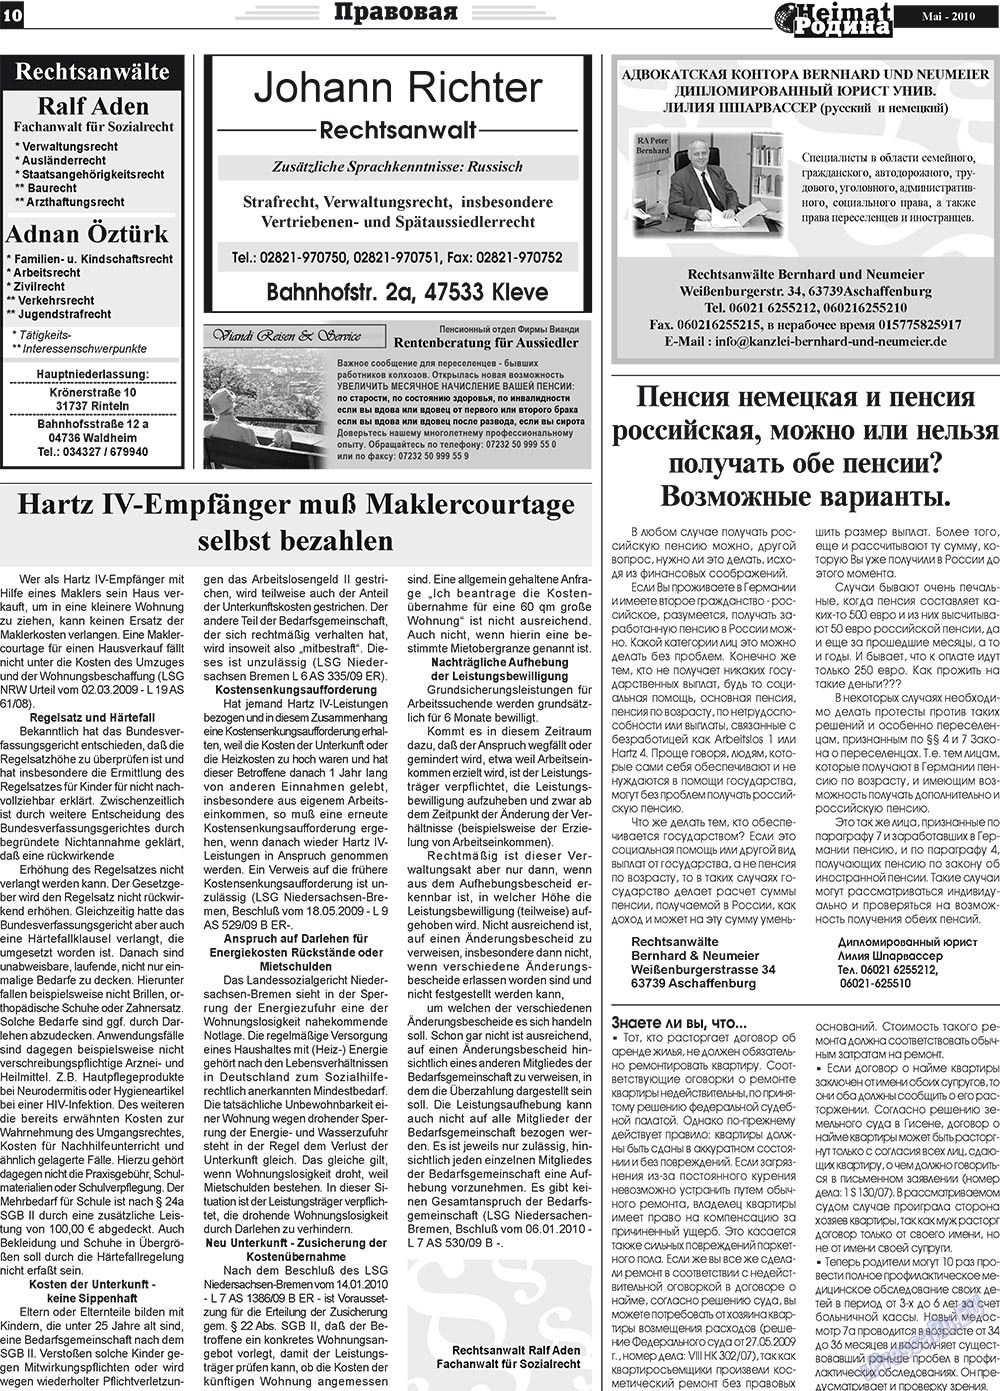 Heimat-Родина (газета). 2010 год, номер 5, стр. 10